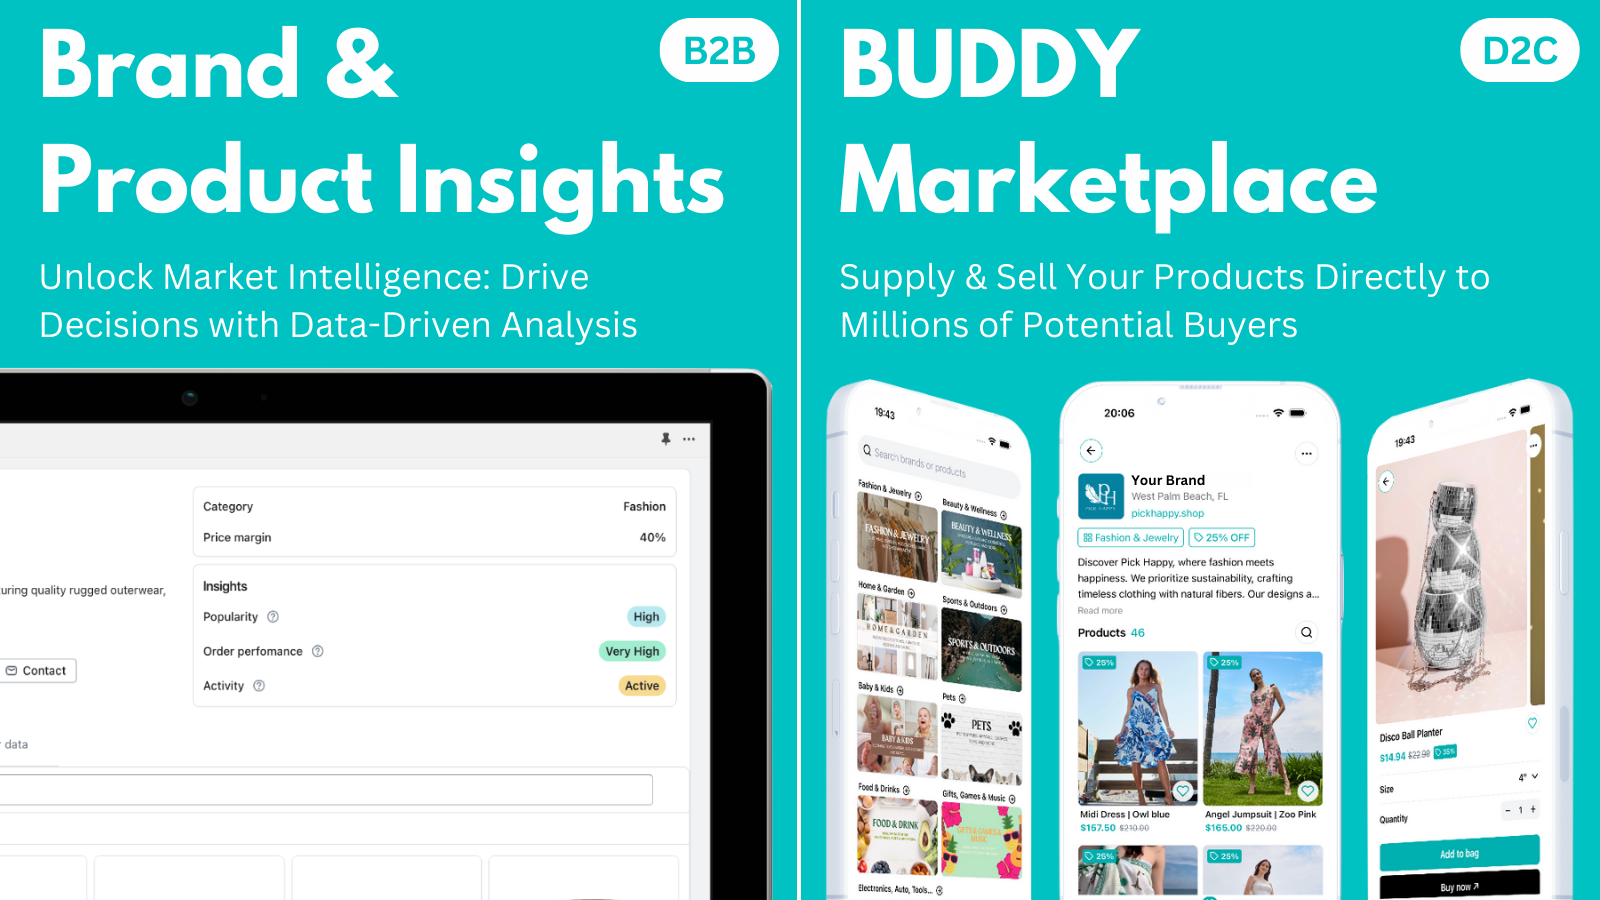 Información de marca y producto y Mercado BUDDY